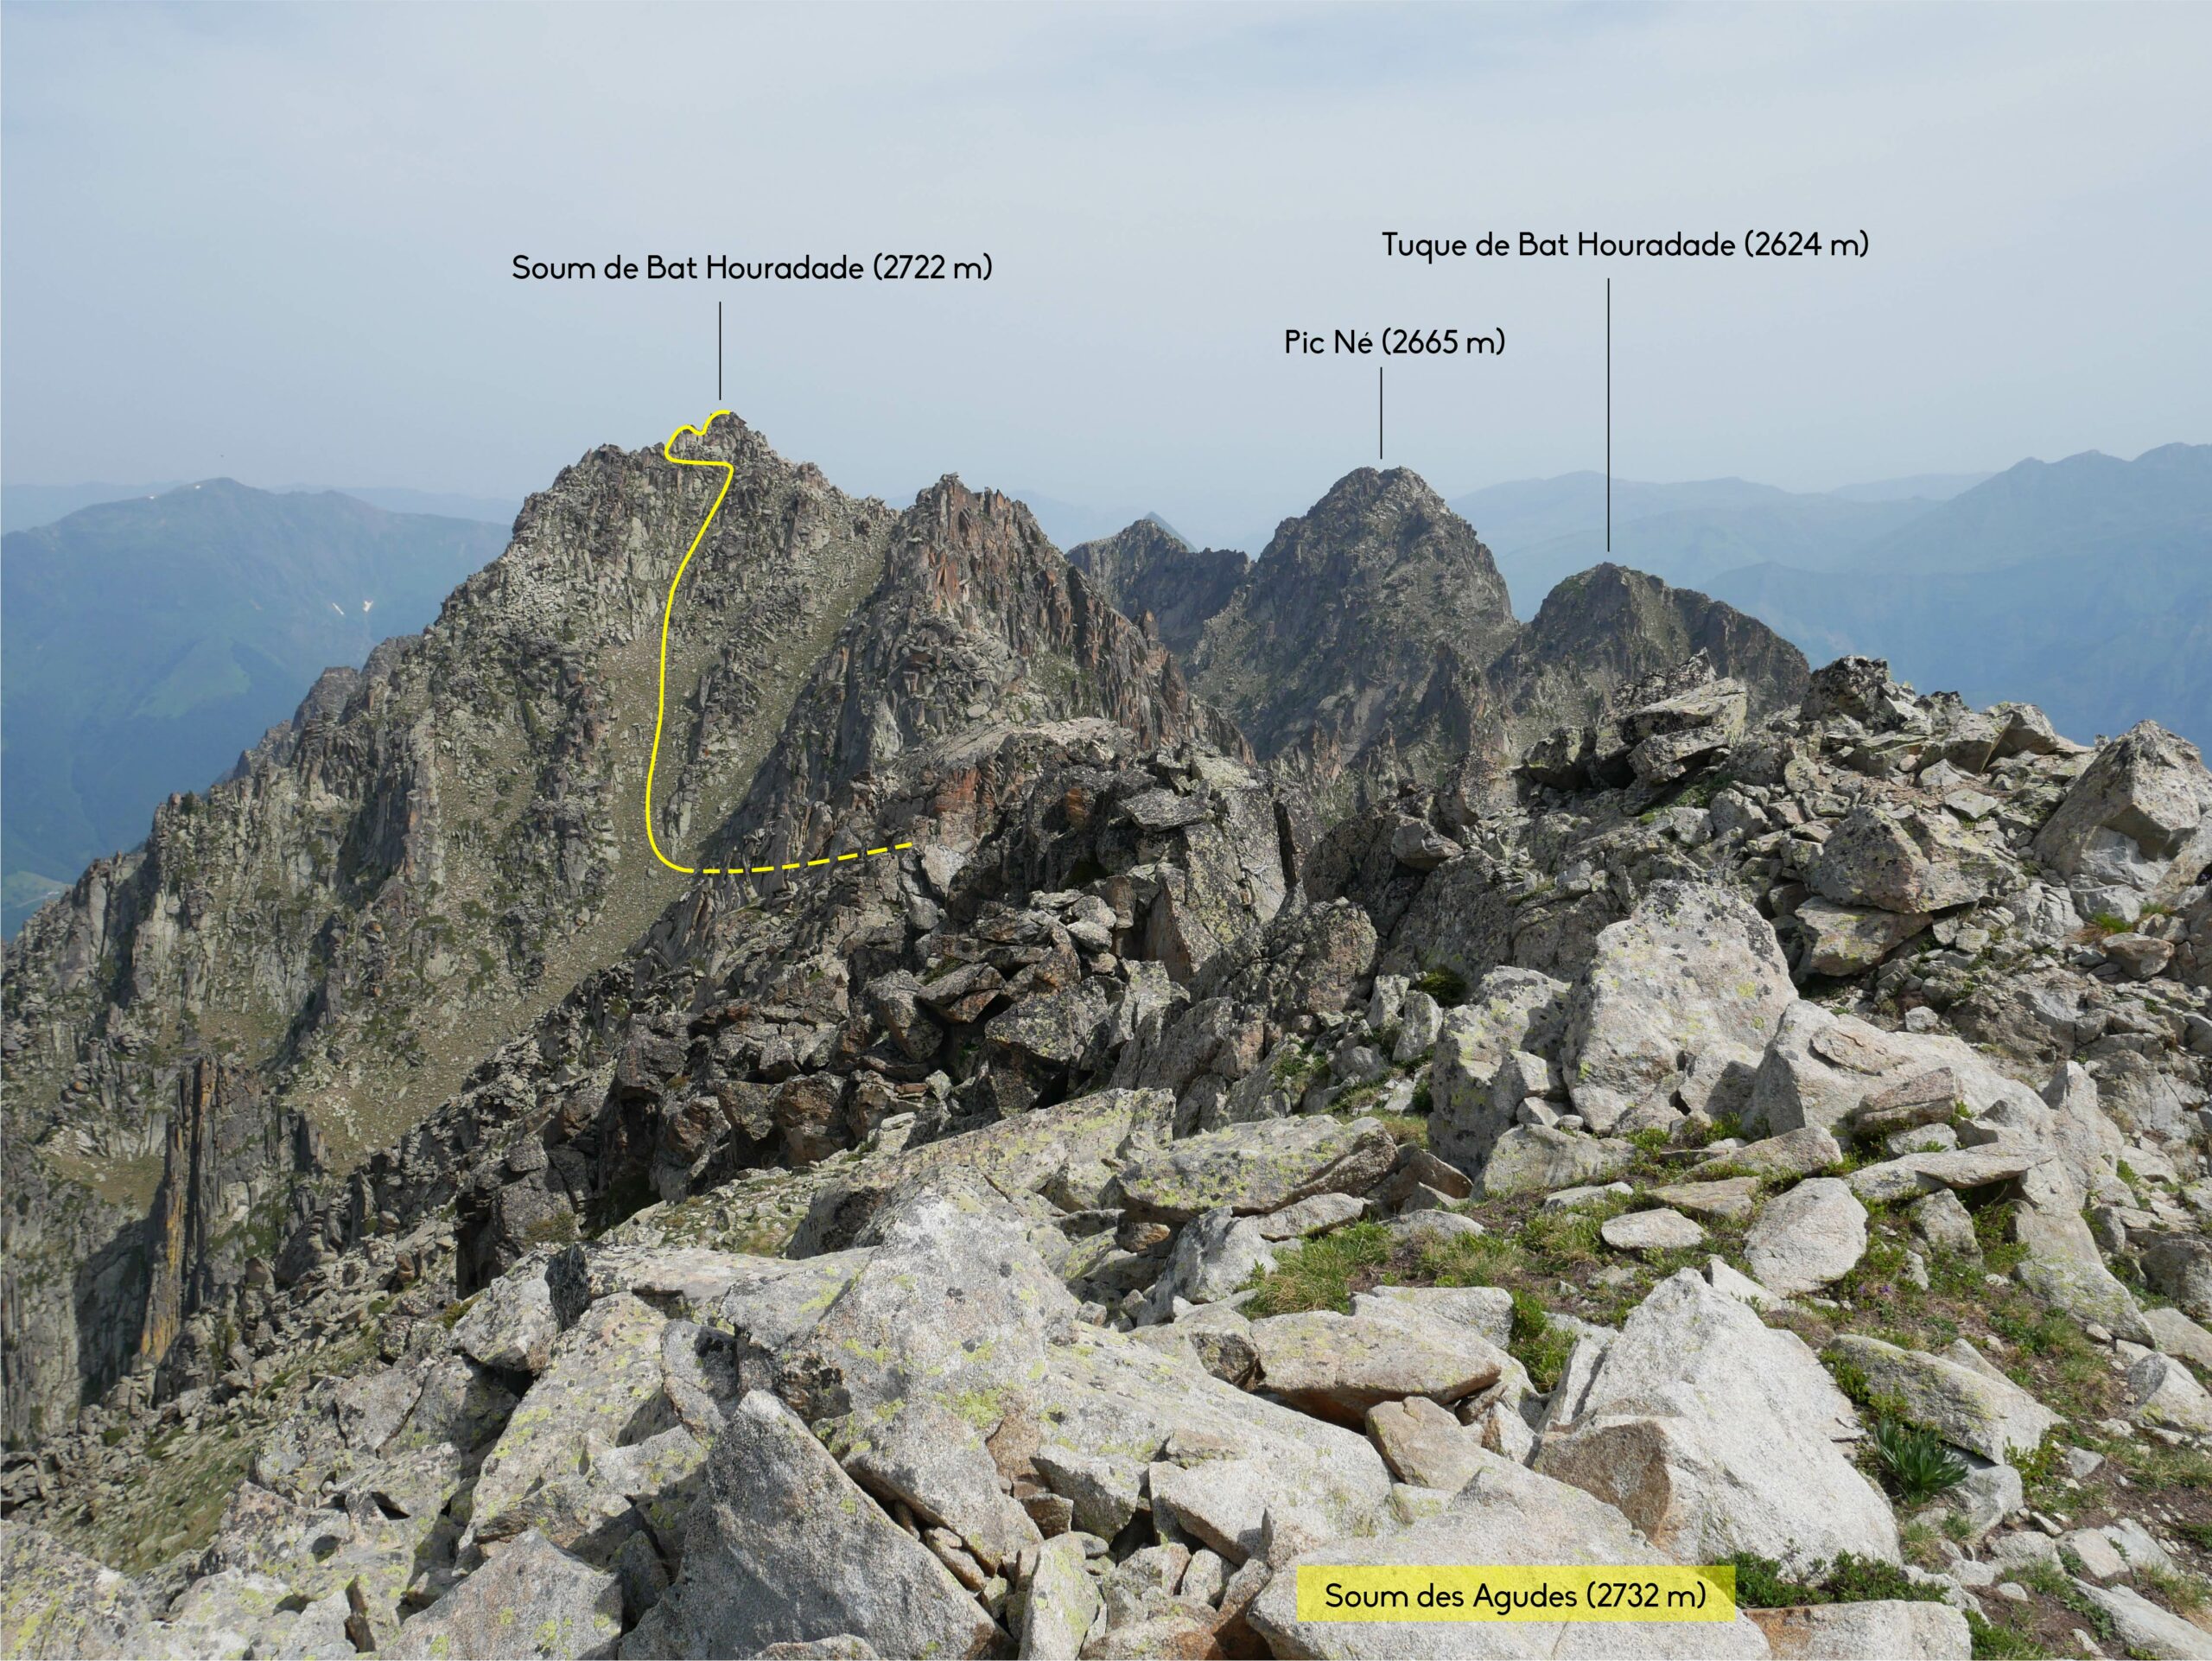 Pointe S des Agudes (2779 m) – Soum des Agudes (2732 m) – Pointe N des Agudes (2708 m) – Soum de Bat Houradade (2722 m) – Aiguille de Lahazère (2552 m) depuis les granges d’Aynis